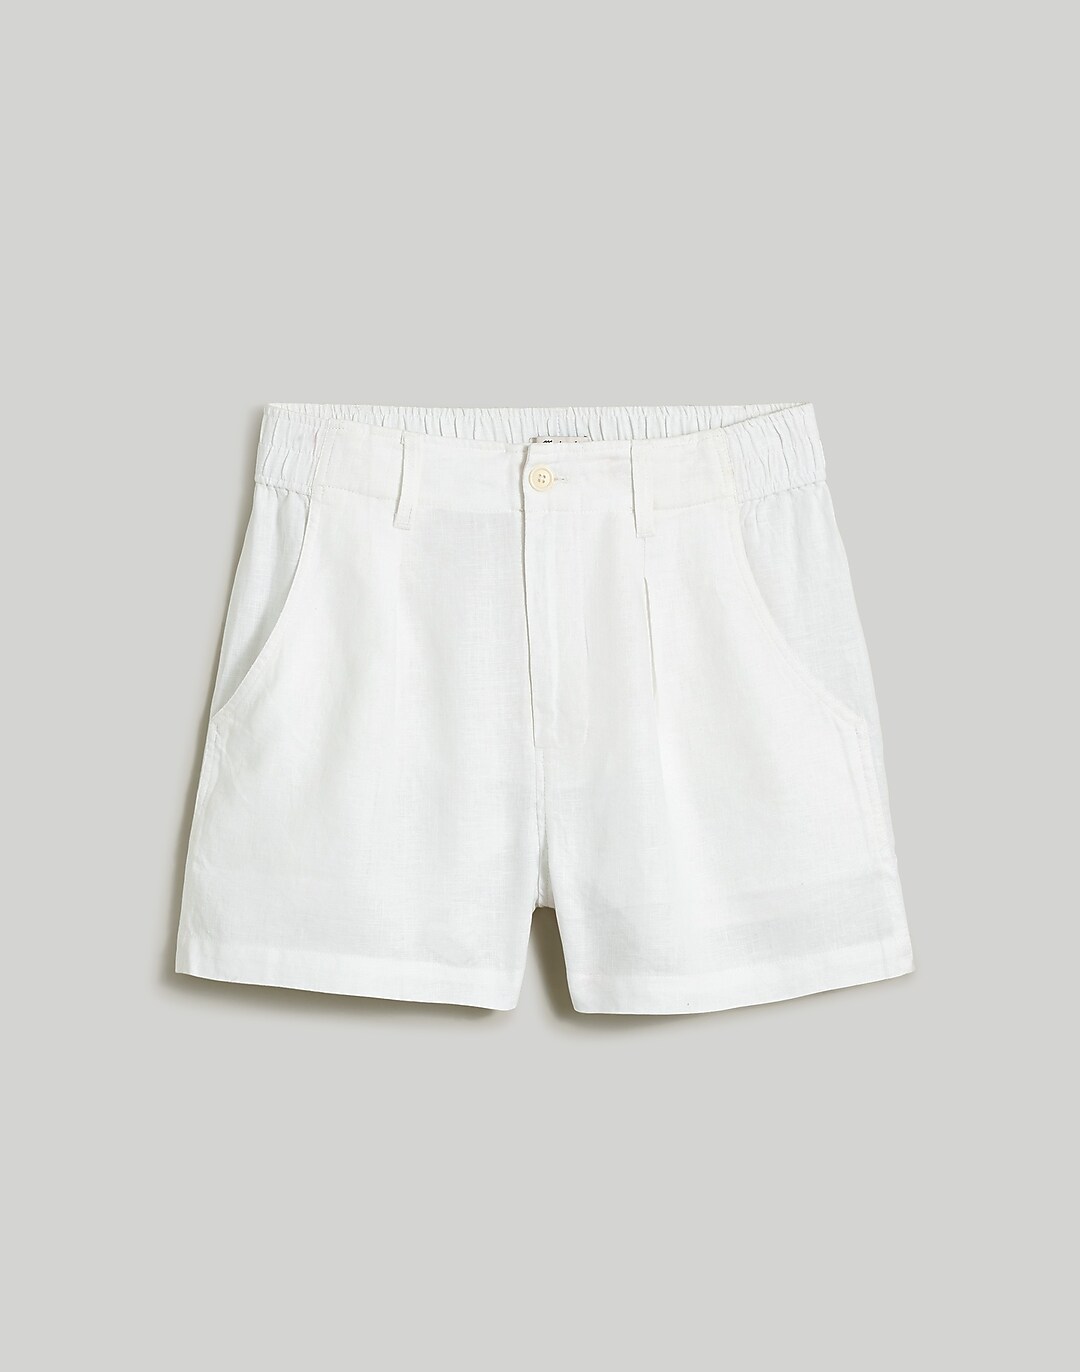  Linen Shorts for Women, Natural 100% Linen Shorts